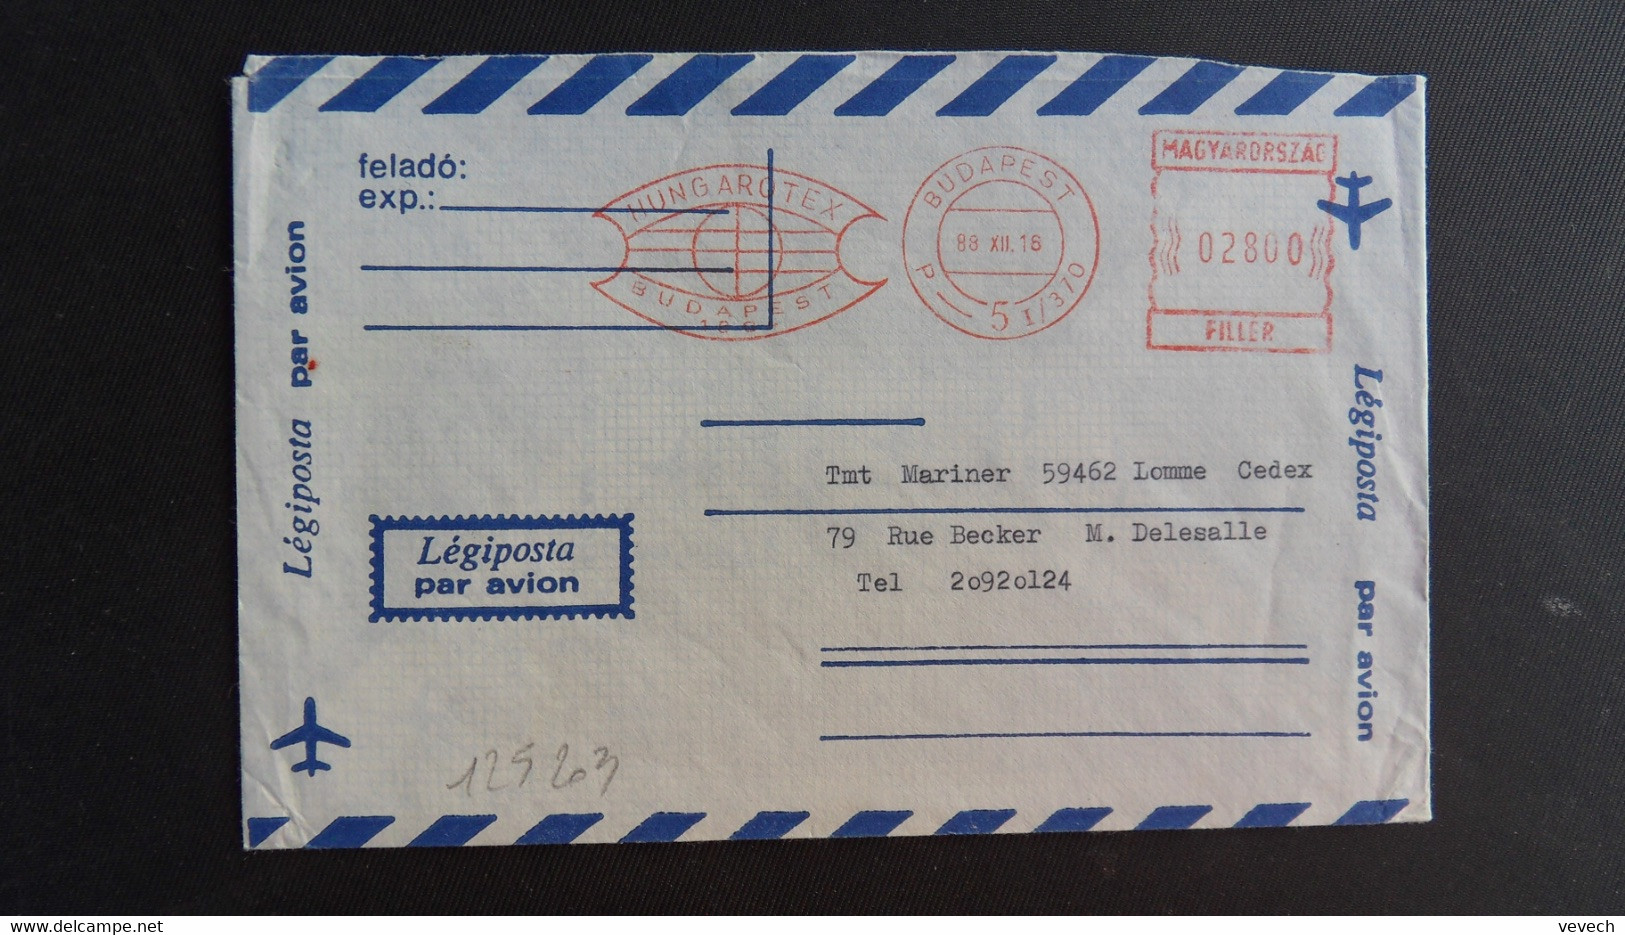 LETTRE Par Avion Pour La FRANCE EMA à 02800 Du 89 XII 16 BUDAPEST + HUNGAROTEX - Covers & Documents